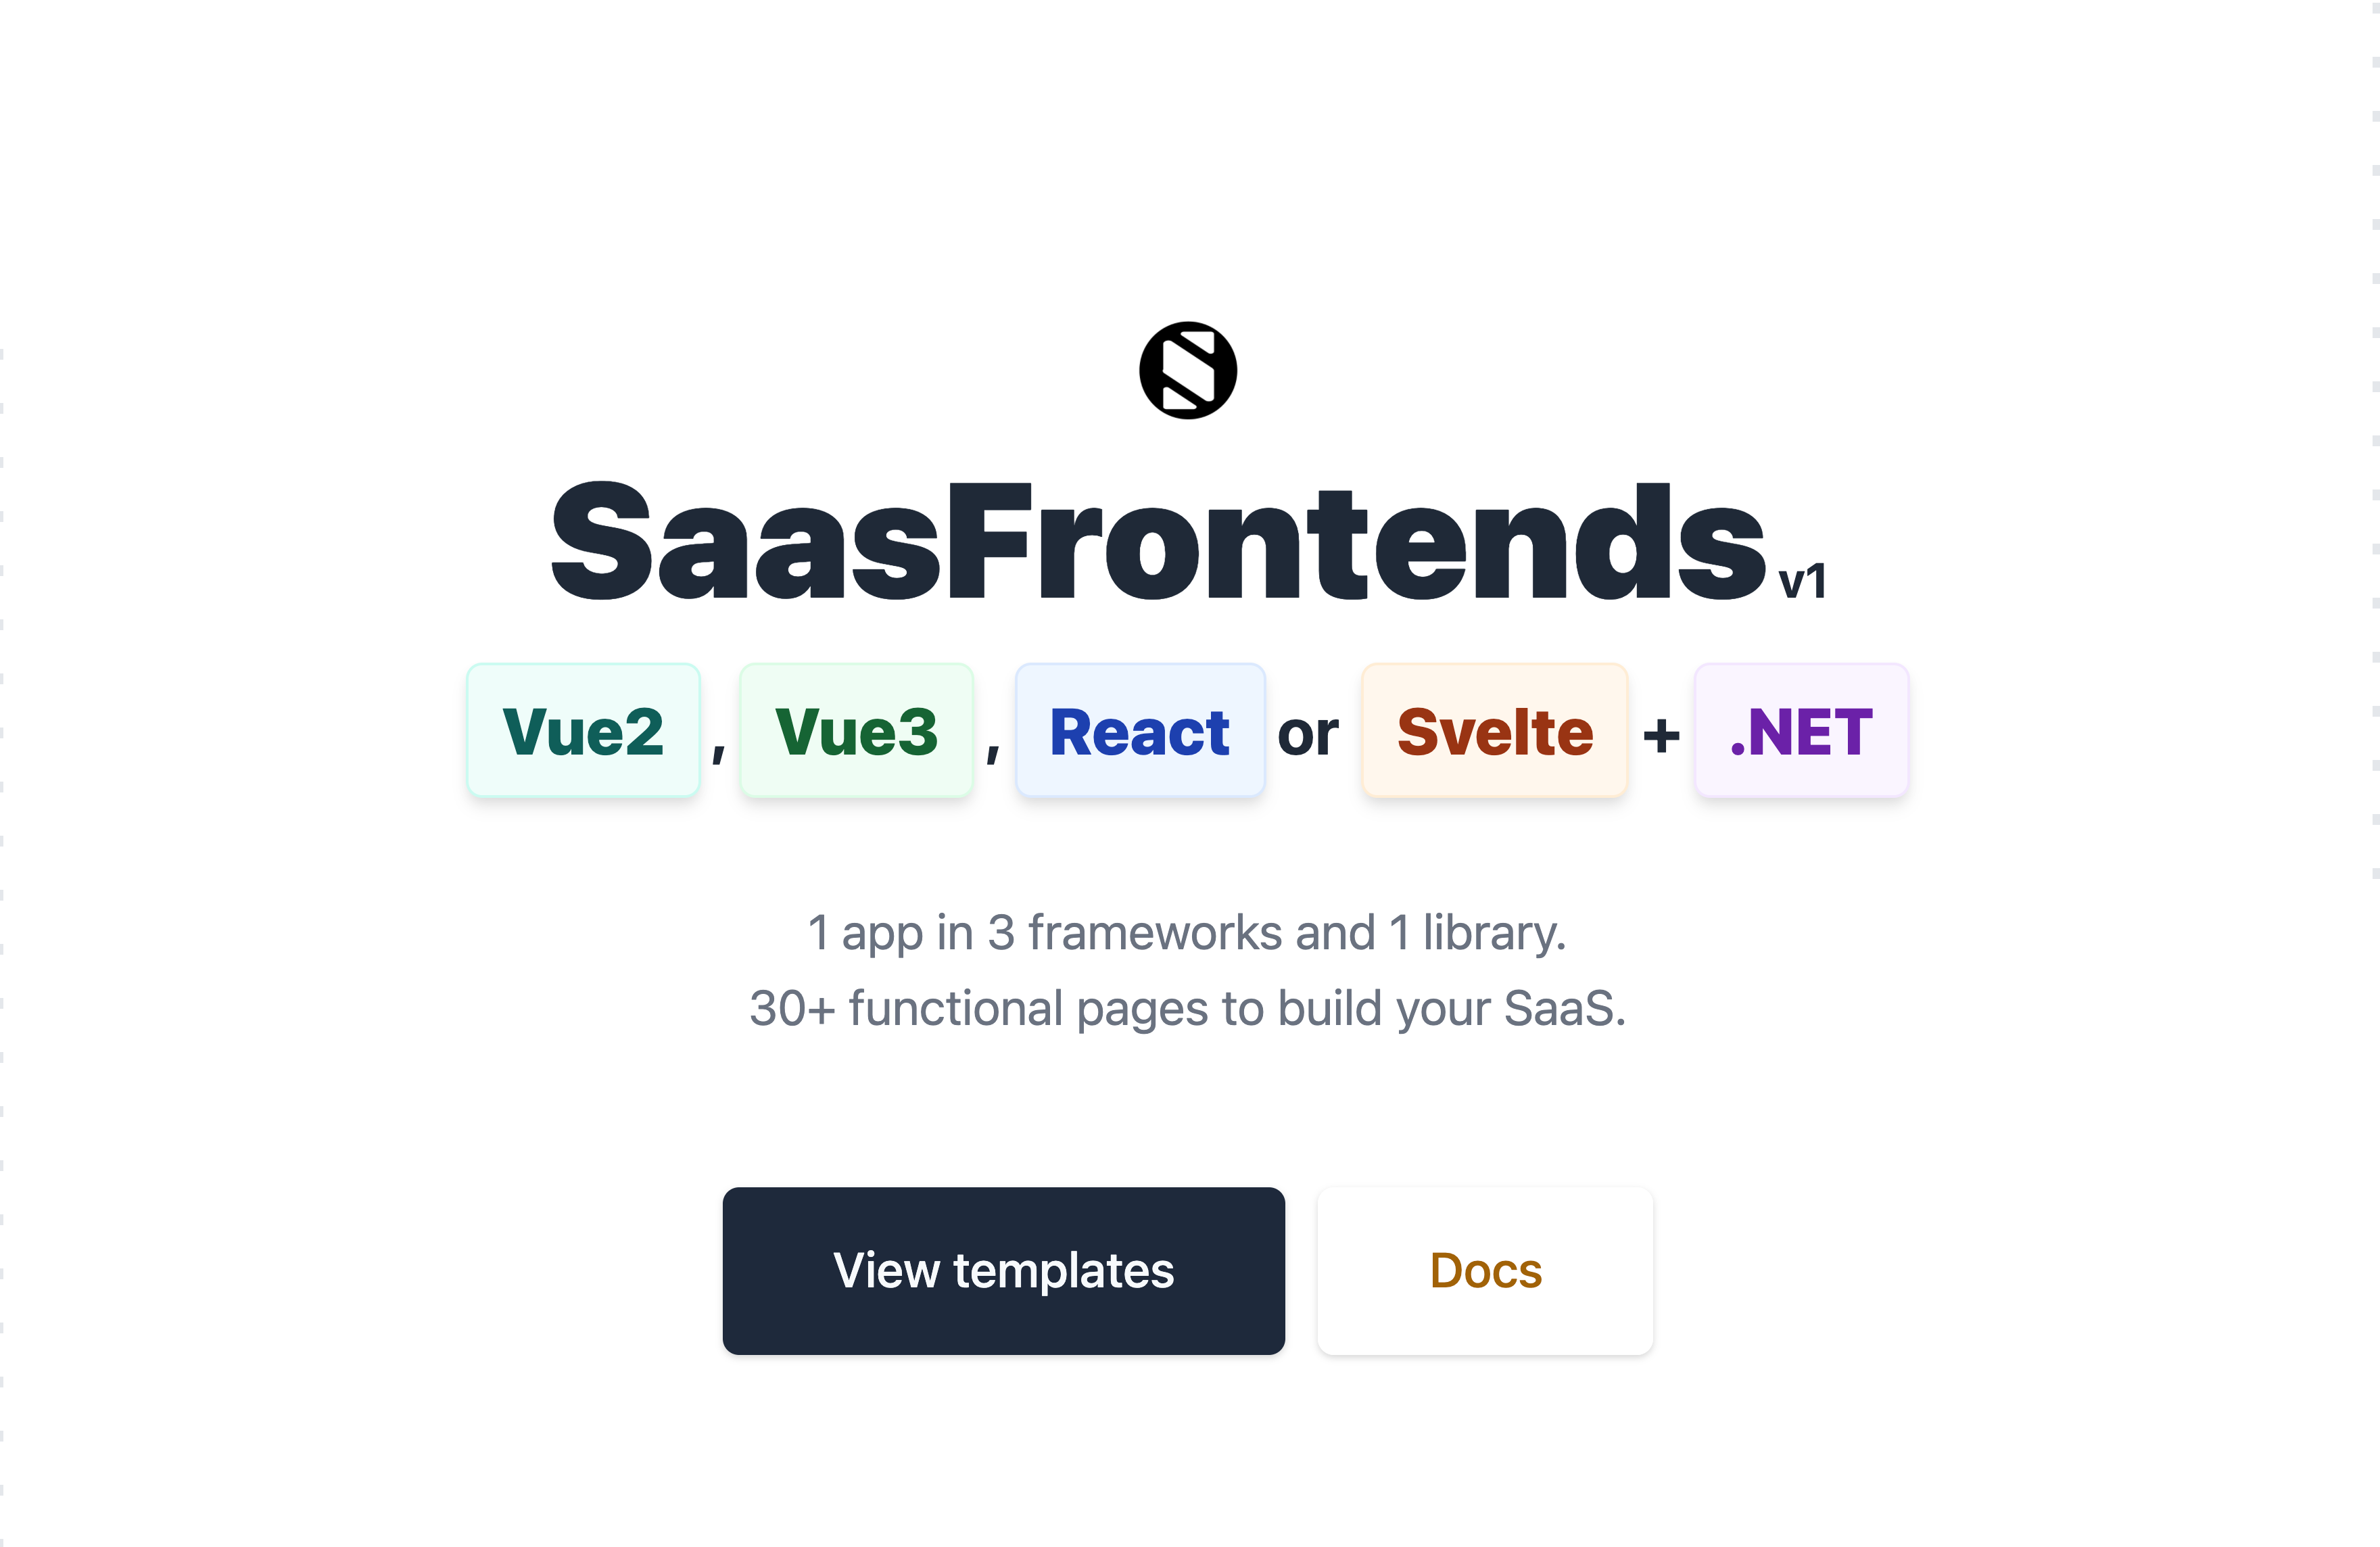 SaasFrontends v1.0